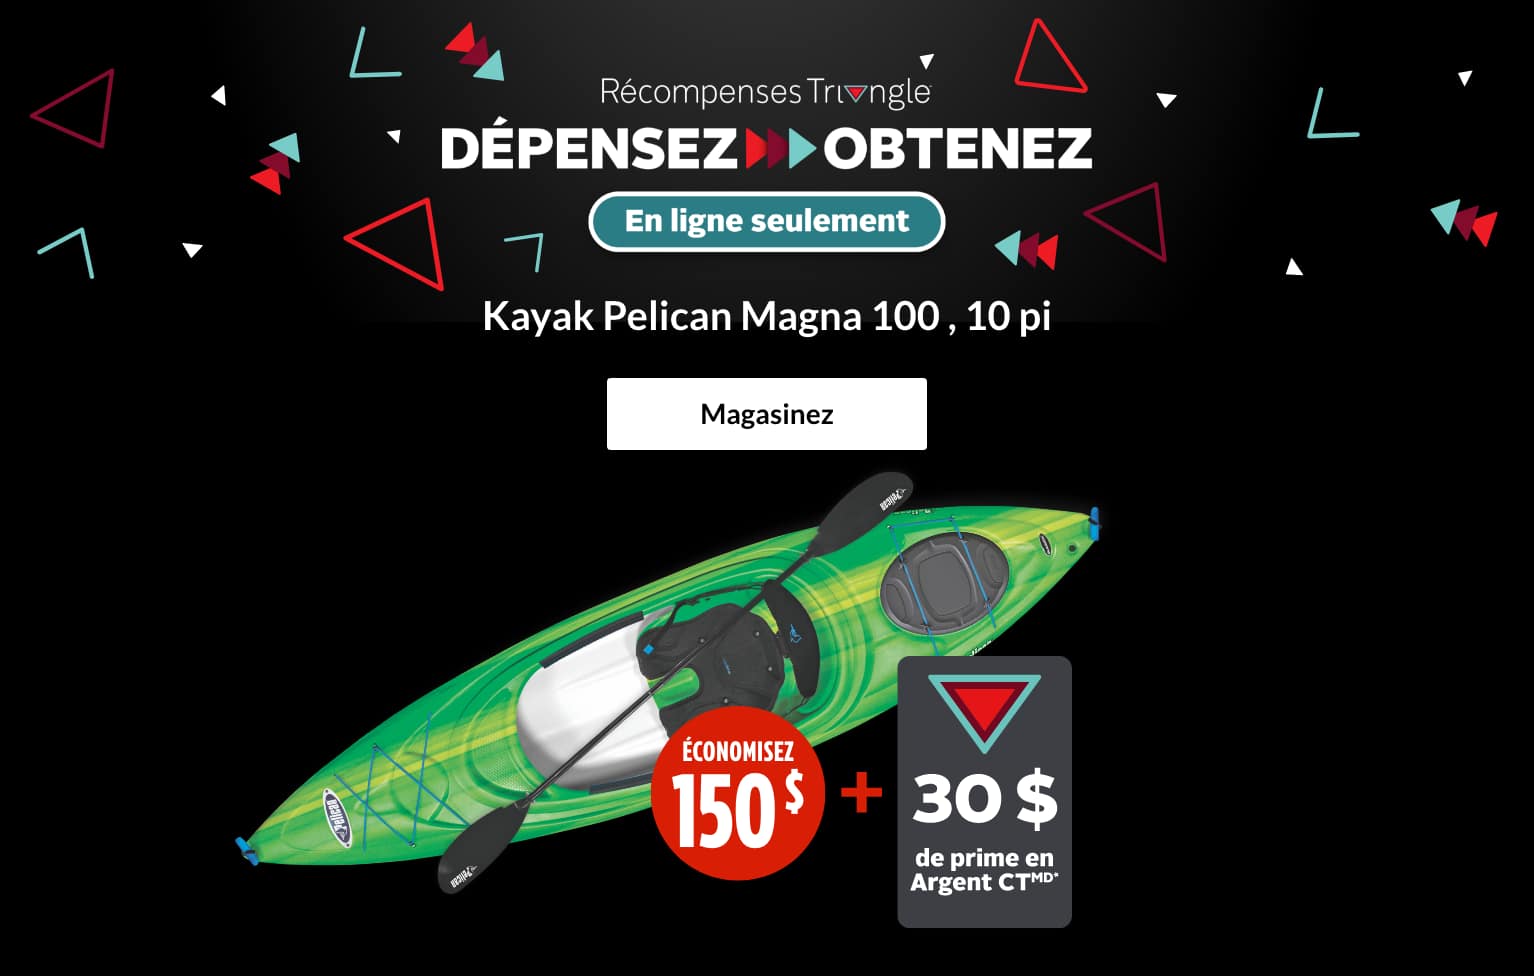 Kayak Pelican Magna 100 , 10 pi  ÉCONOMISEZ 150 $ + GAGNEZ une prime de 30 $ en Argent CT